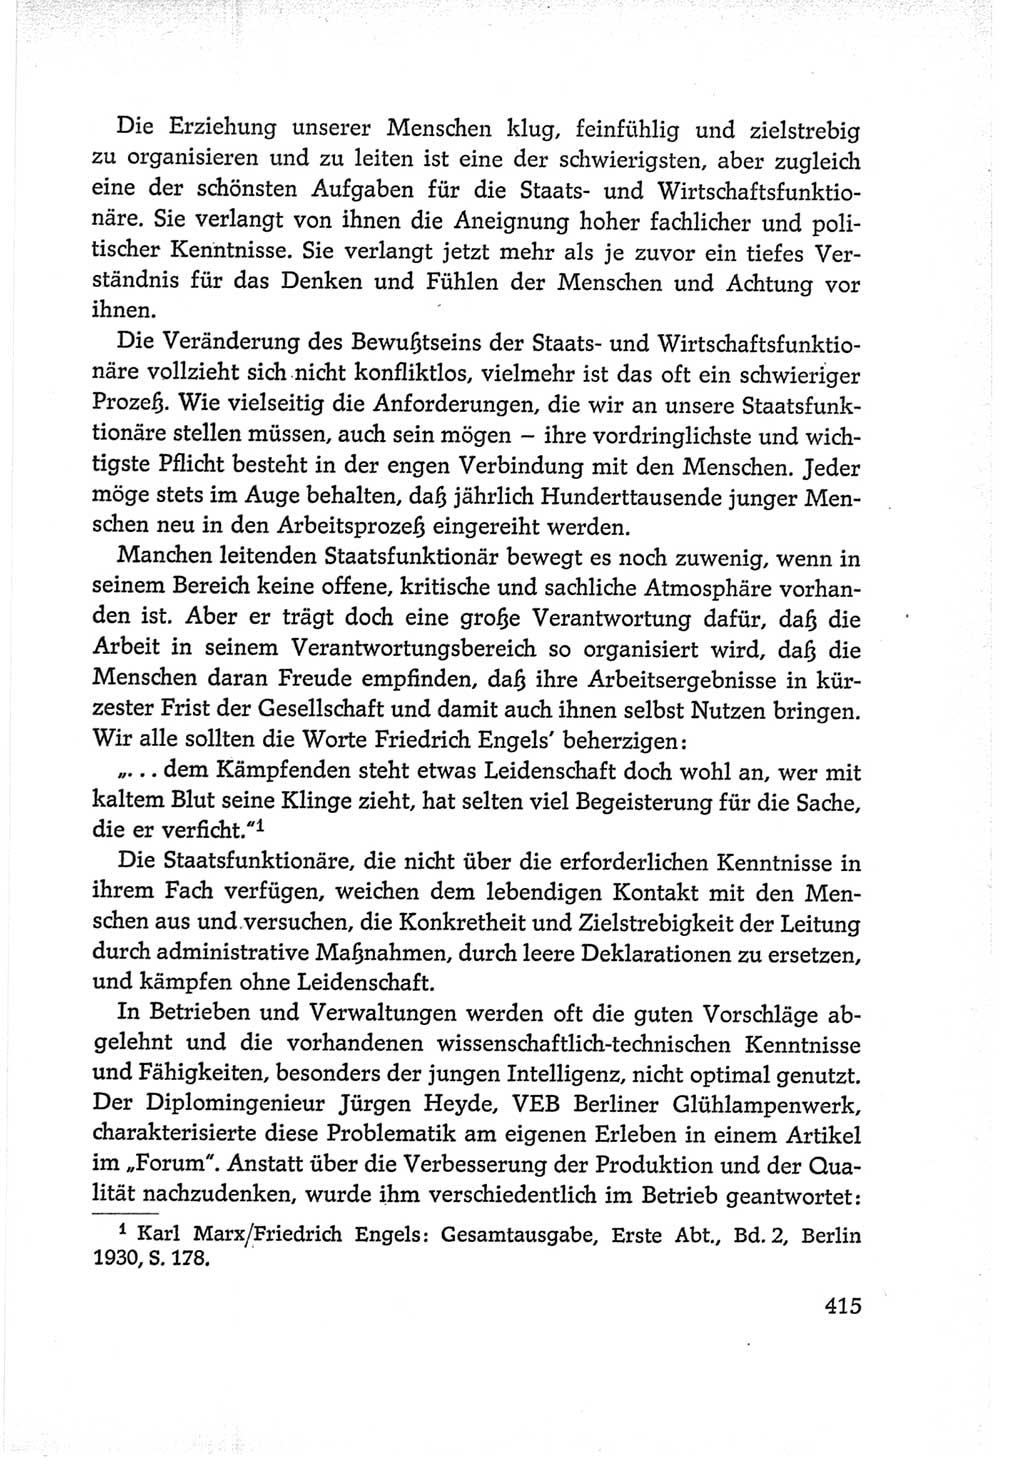 Protokoll der Verhandlungen des Ⅵ. Parteitages der Sozialistischen Einheitspartei Deutschlands (SED) [Deutsche Demokratische Republik (DDR)] 1963, Band Ⅰ, Seite 415 (Prot. Verh. Ⅵ. PT SED DDR 1963, Bd. Ⅰ, S. 415)